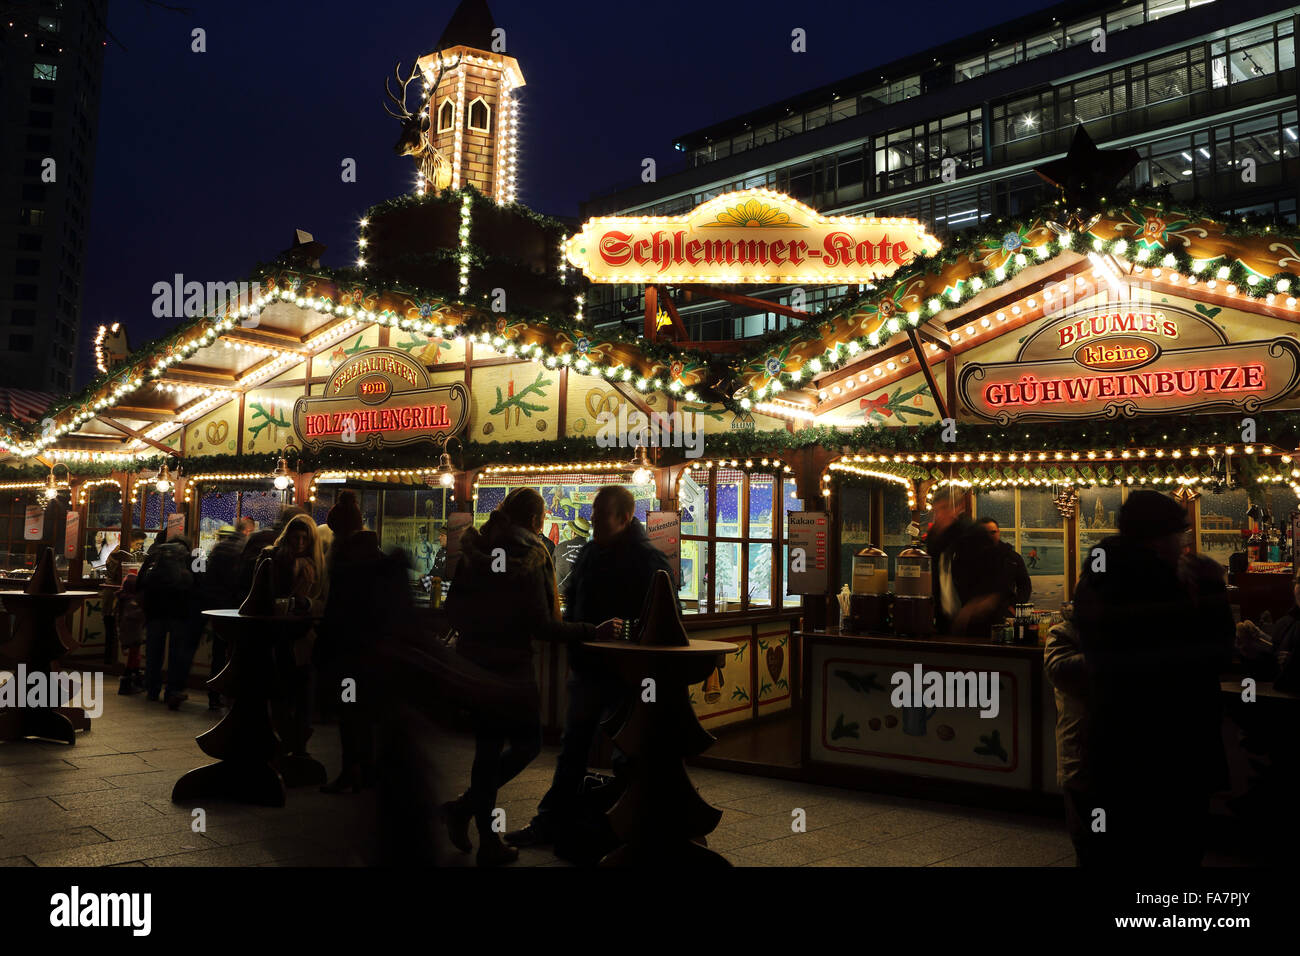 Essen und trinken Stände auf der Stadt-Weihnachtsmarkt bin Gedachtniskirche Weihnachtsmarkt am Ku'damm in Berlin, Deutschland. Stockfoto